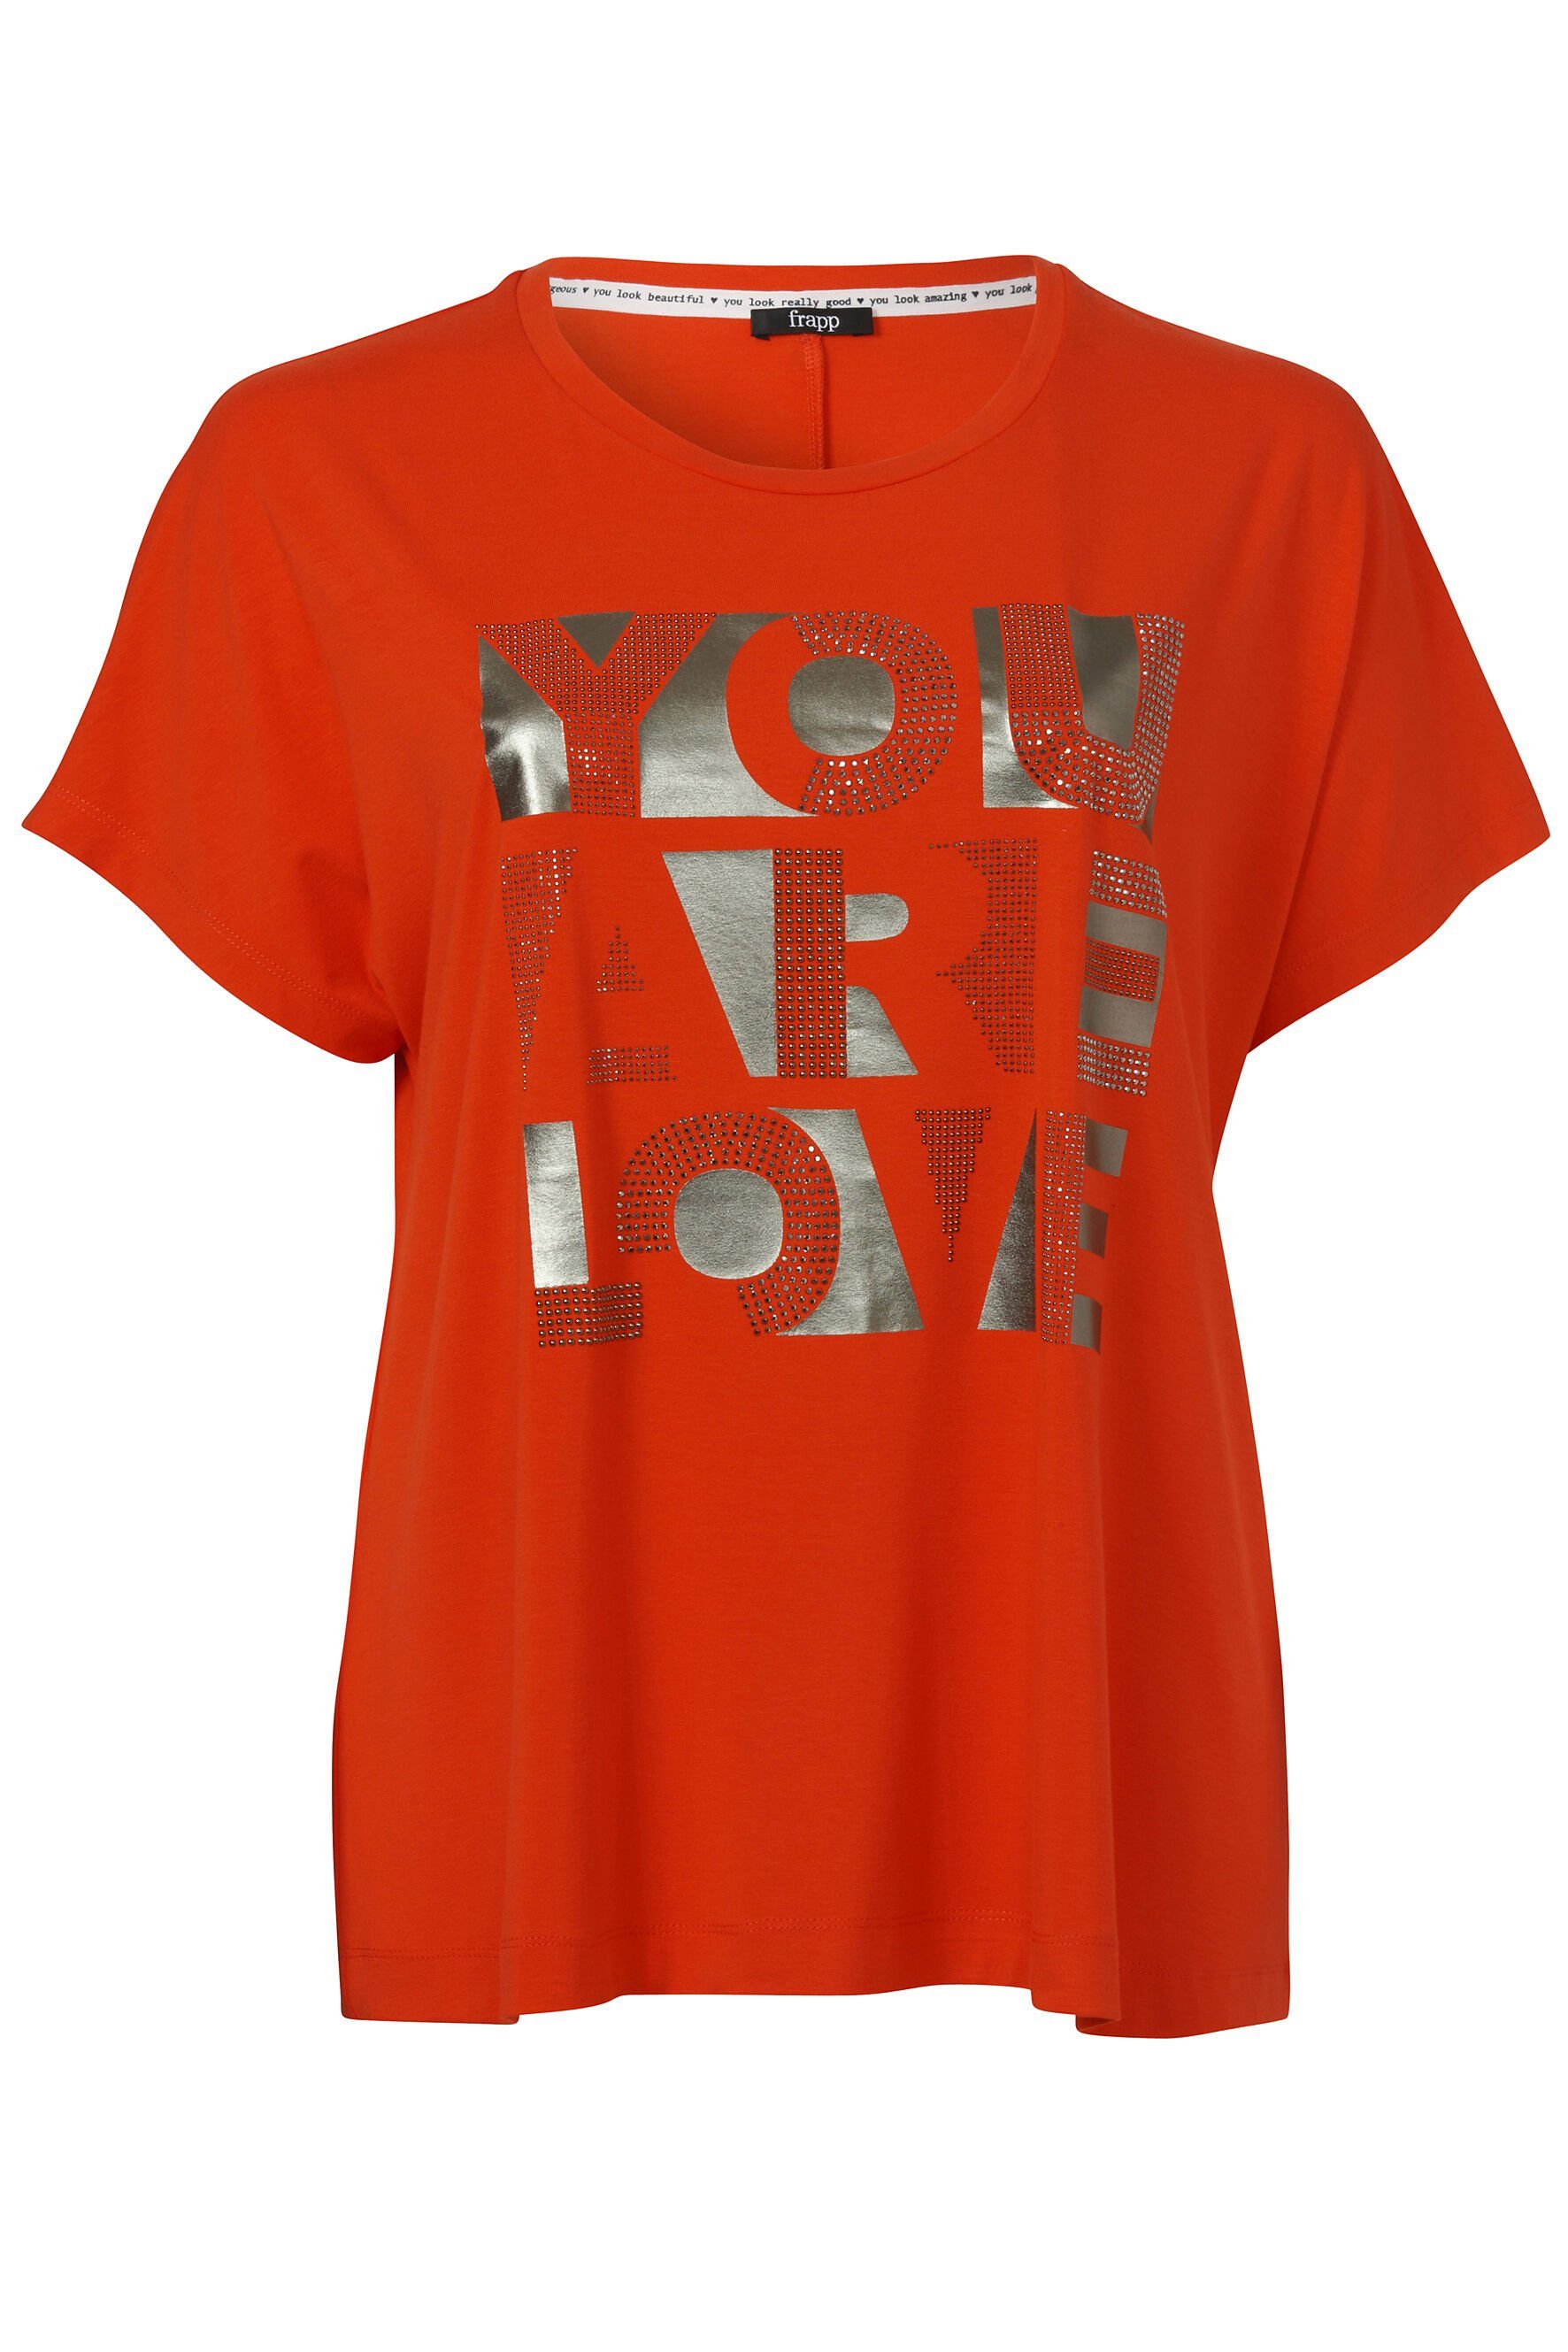 und dark FRAPP Logo-Applikation orange Print-Shirt einer Glitzersteinen